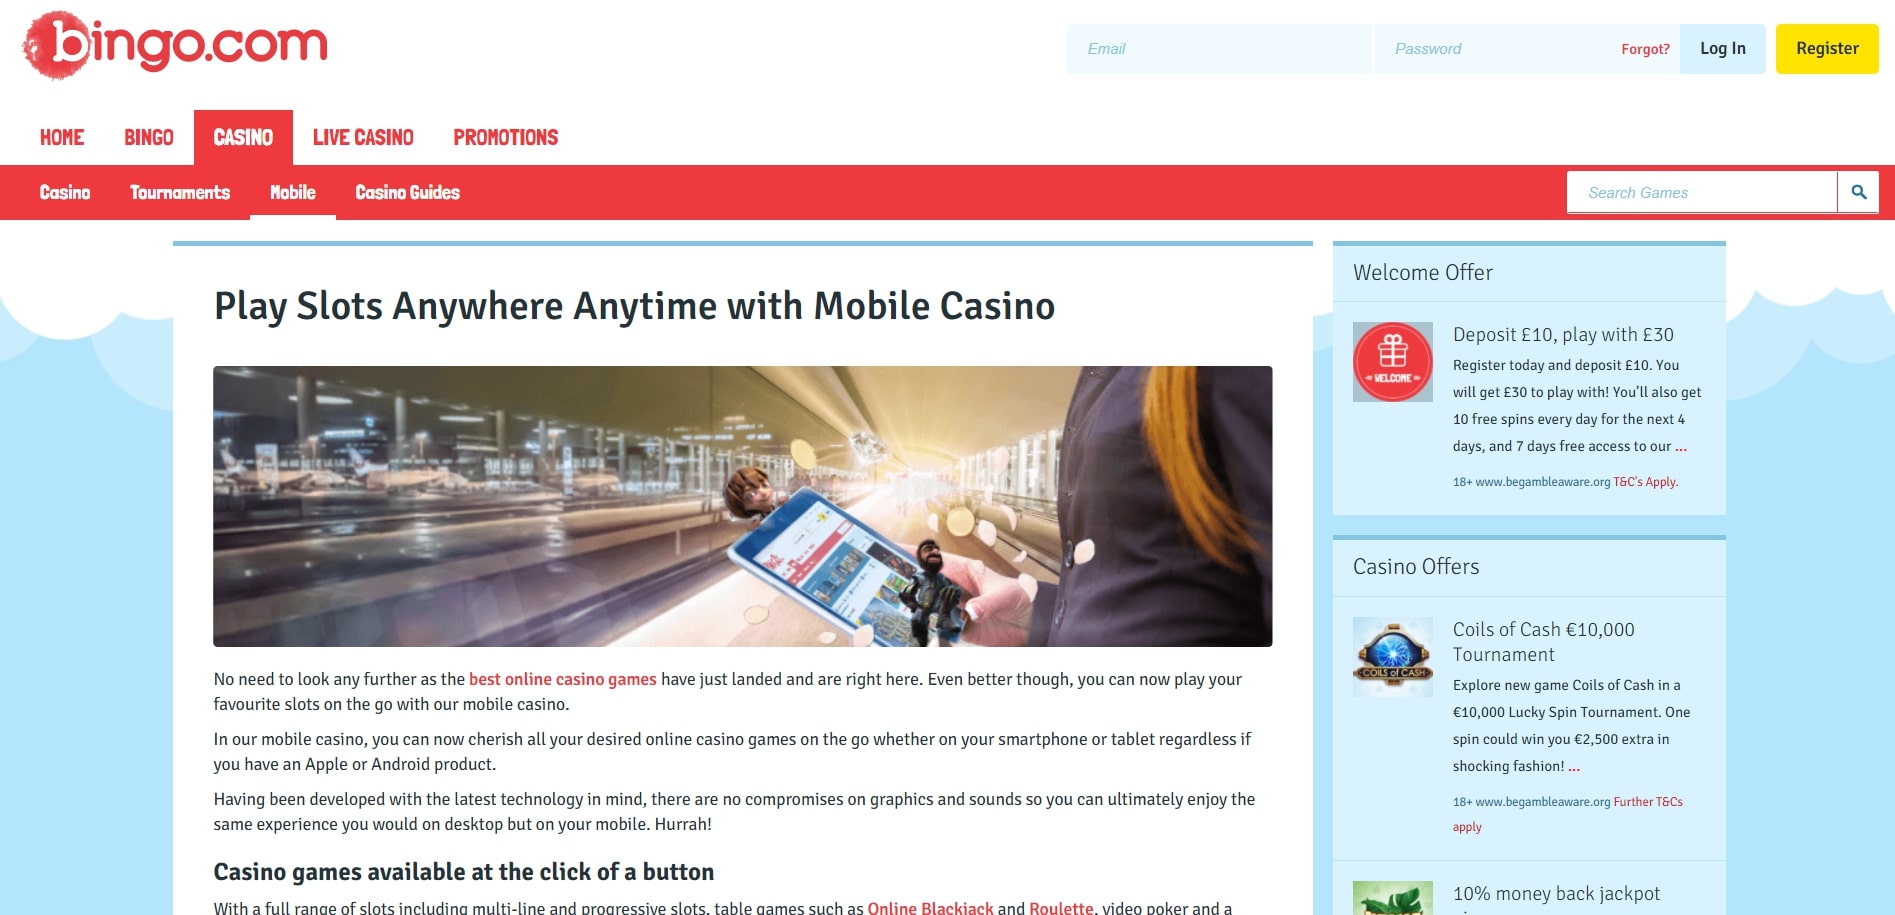 Bingo com Casino App